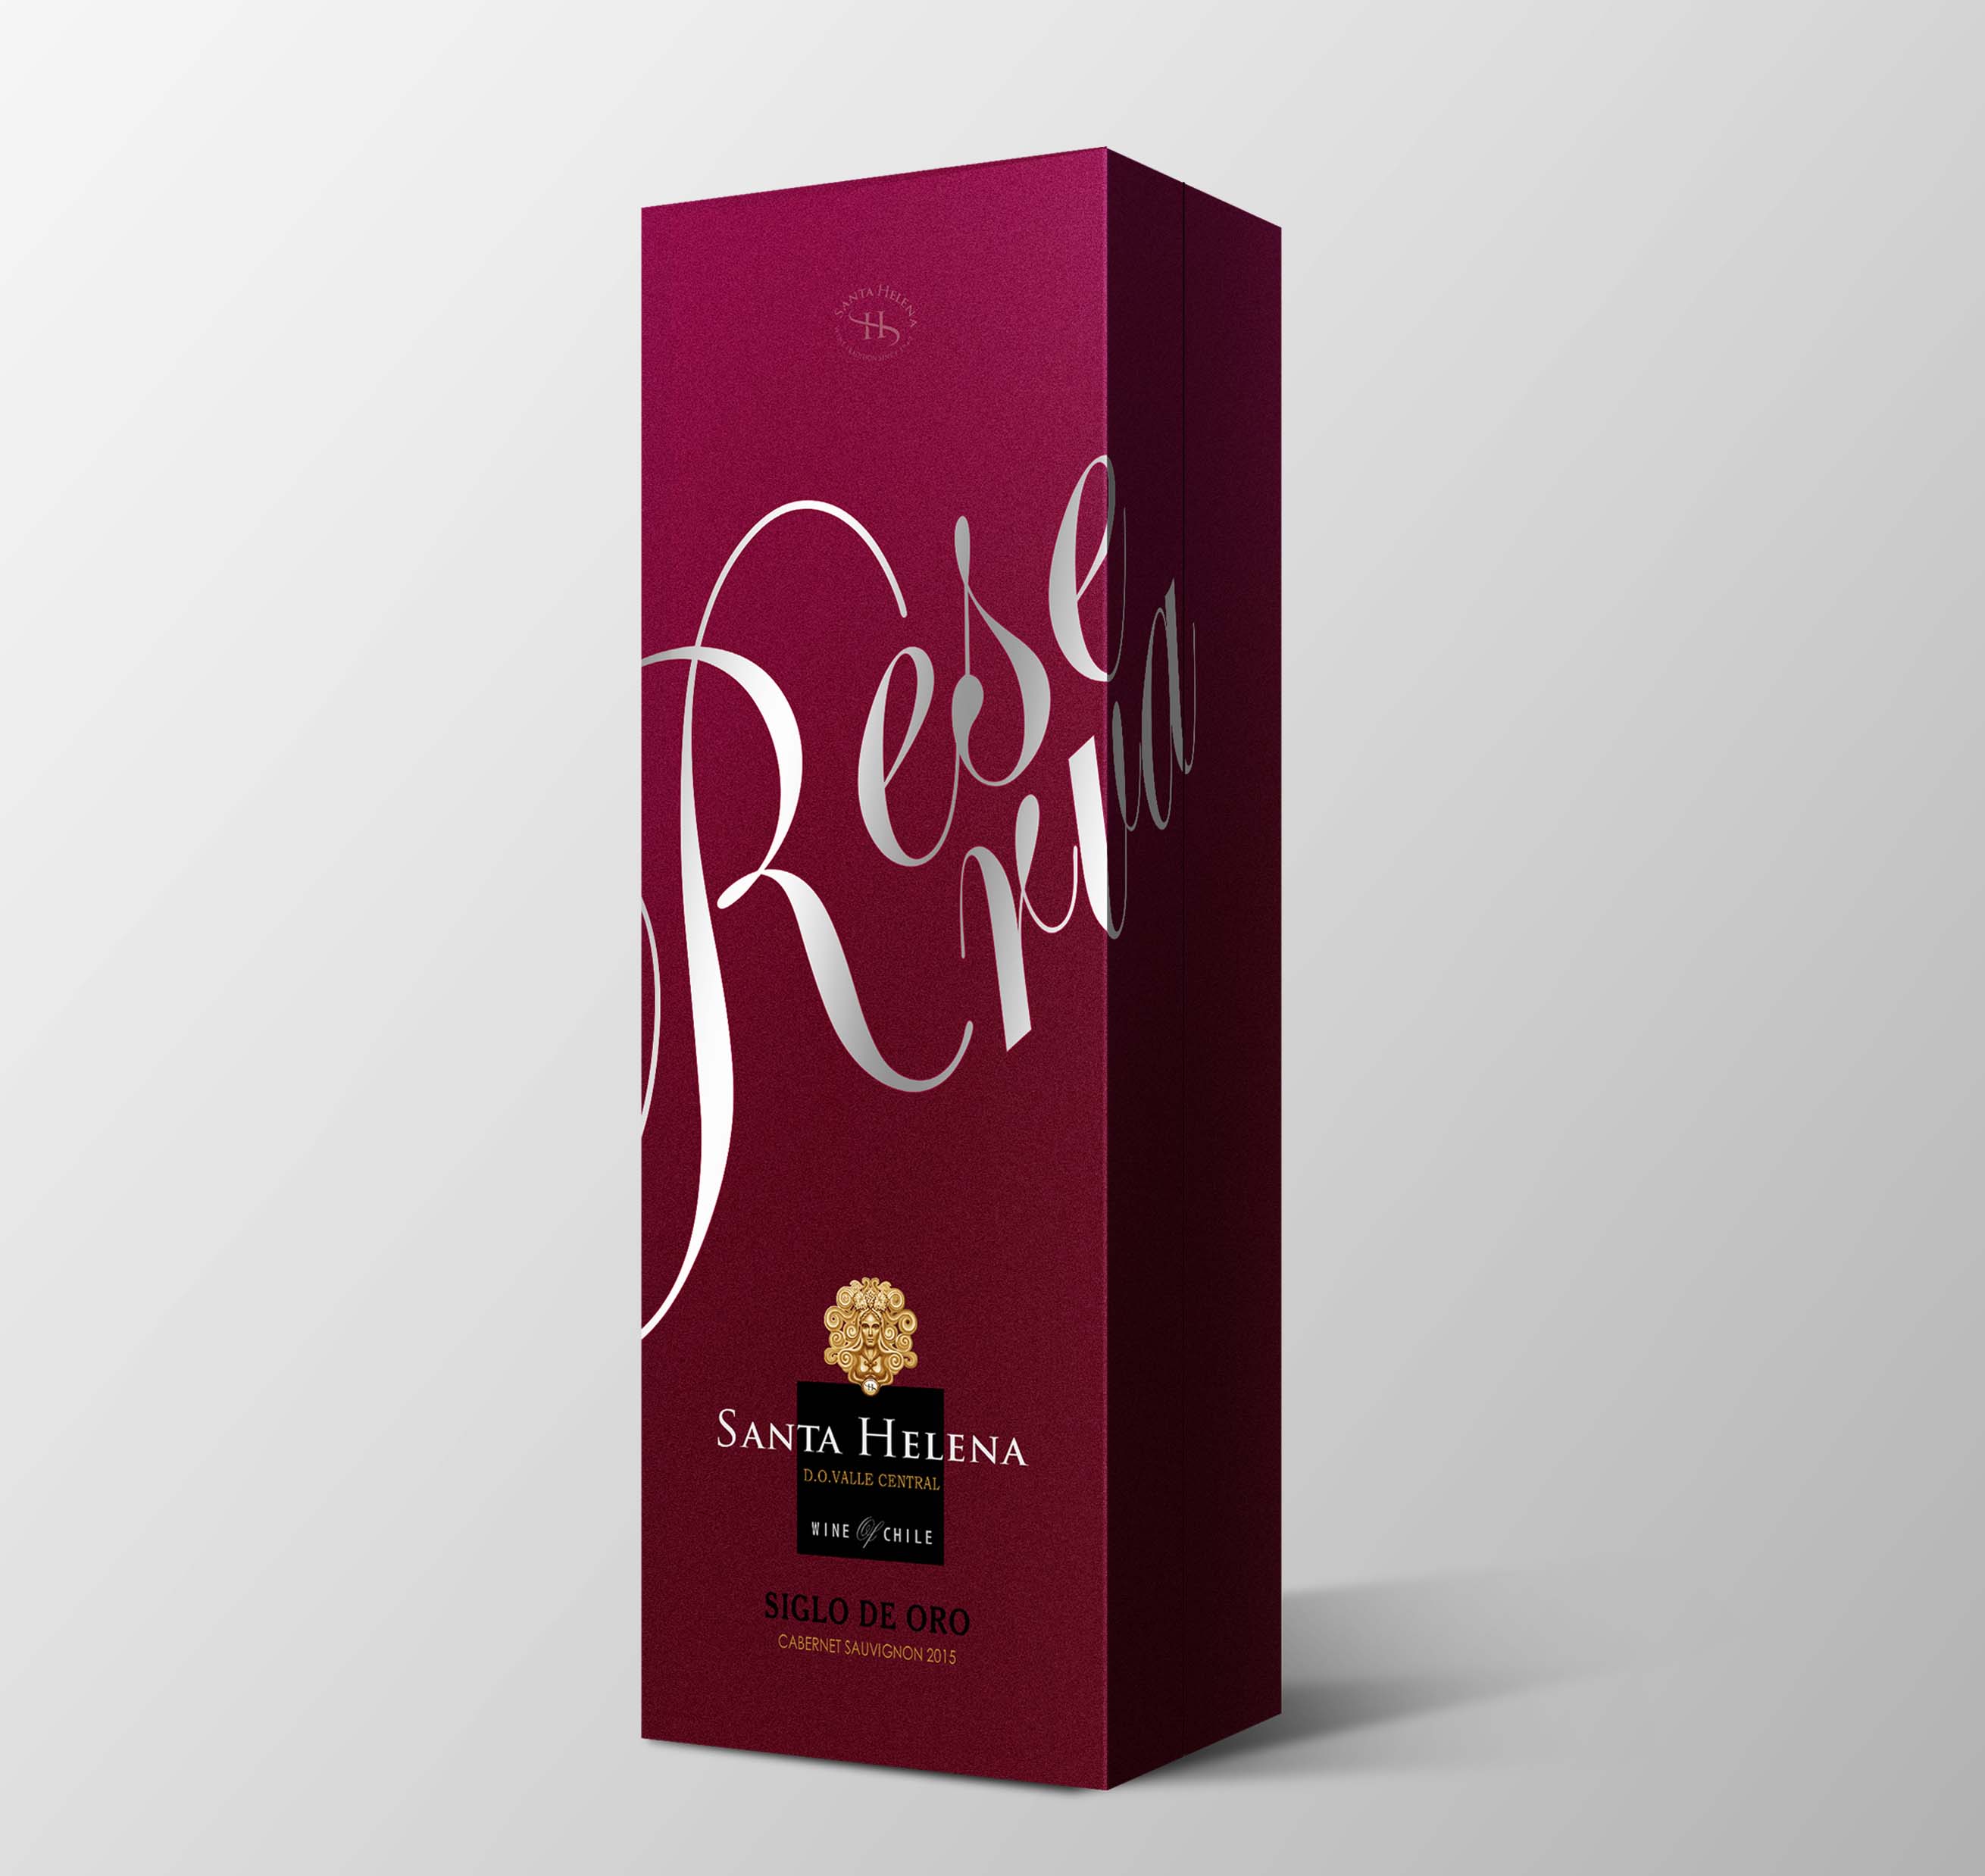 山西专业的红酒包装设计20年包装设计经验